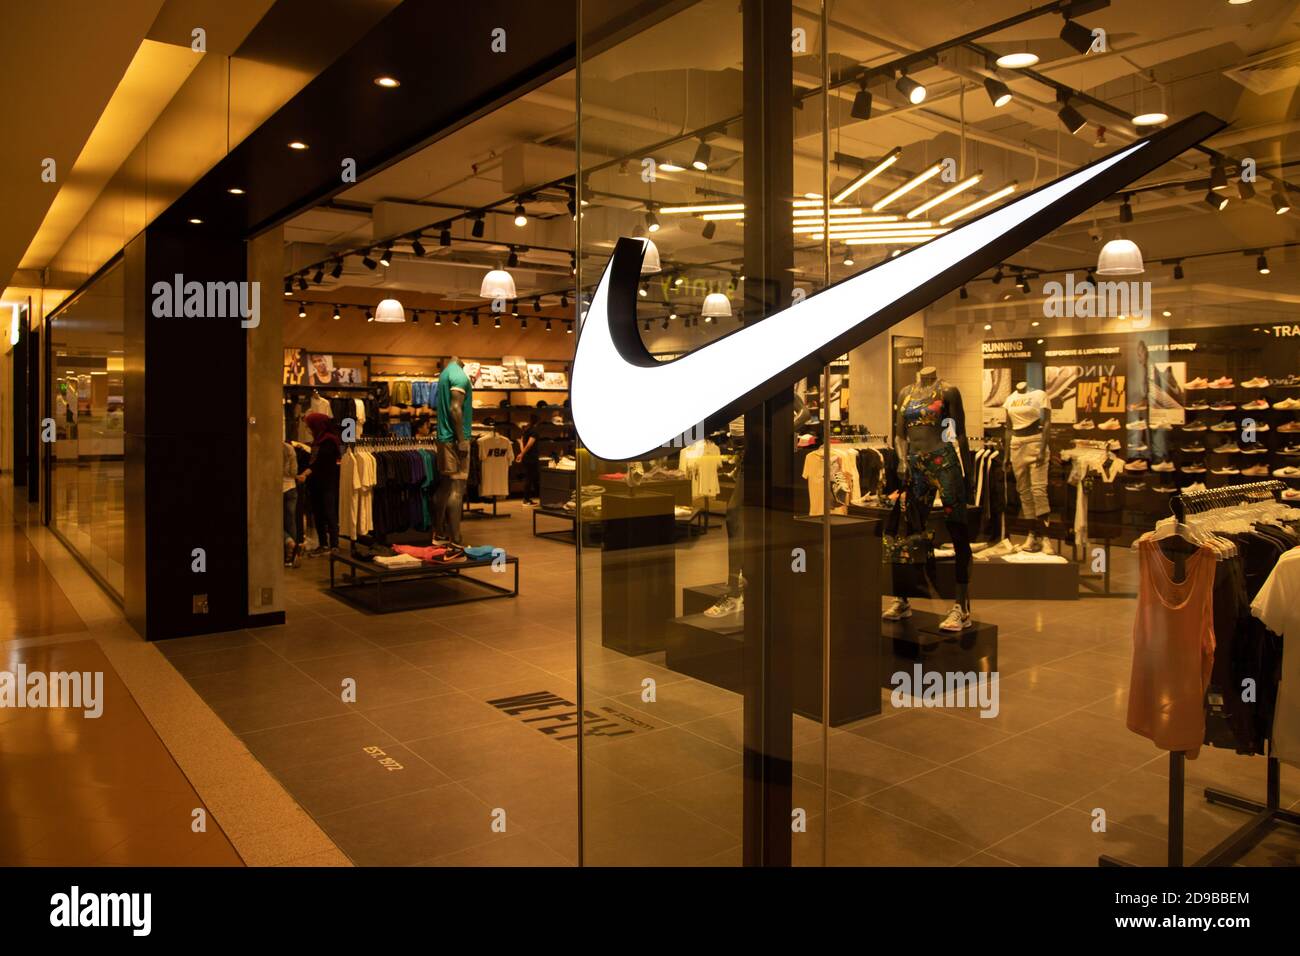 Nike, Inc. Ist ein US-amerikanisches multinationales Unternehmen, das Schuhe, Bekleidung, Ausrüstung, Accessoires und Dienstleistungen weltweit vertreibt. Stockfoto